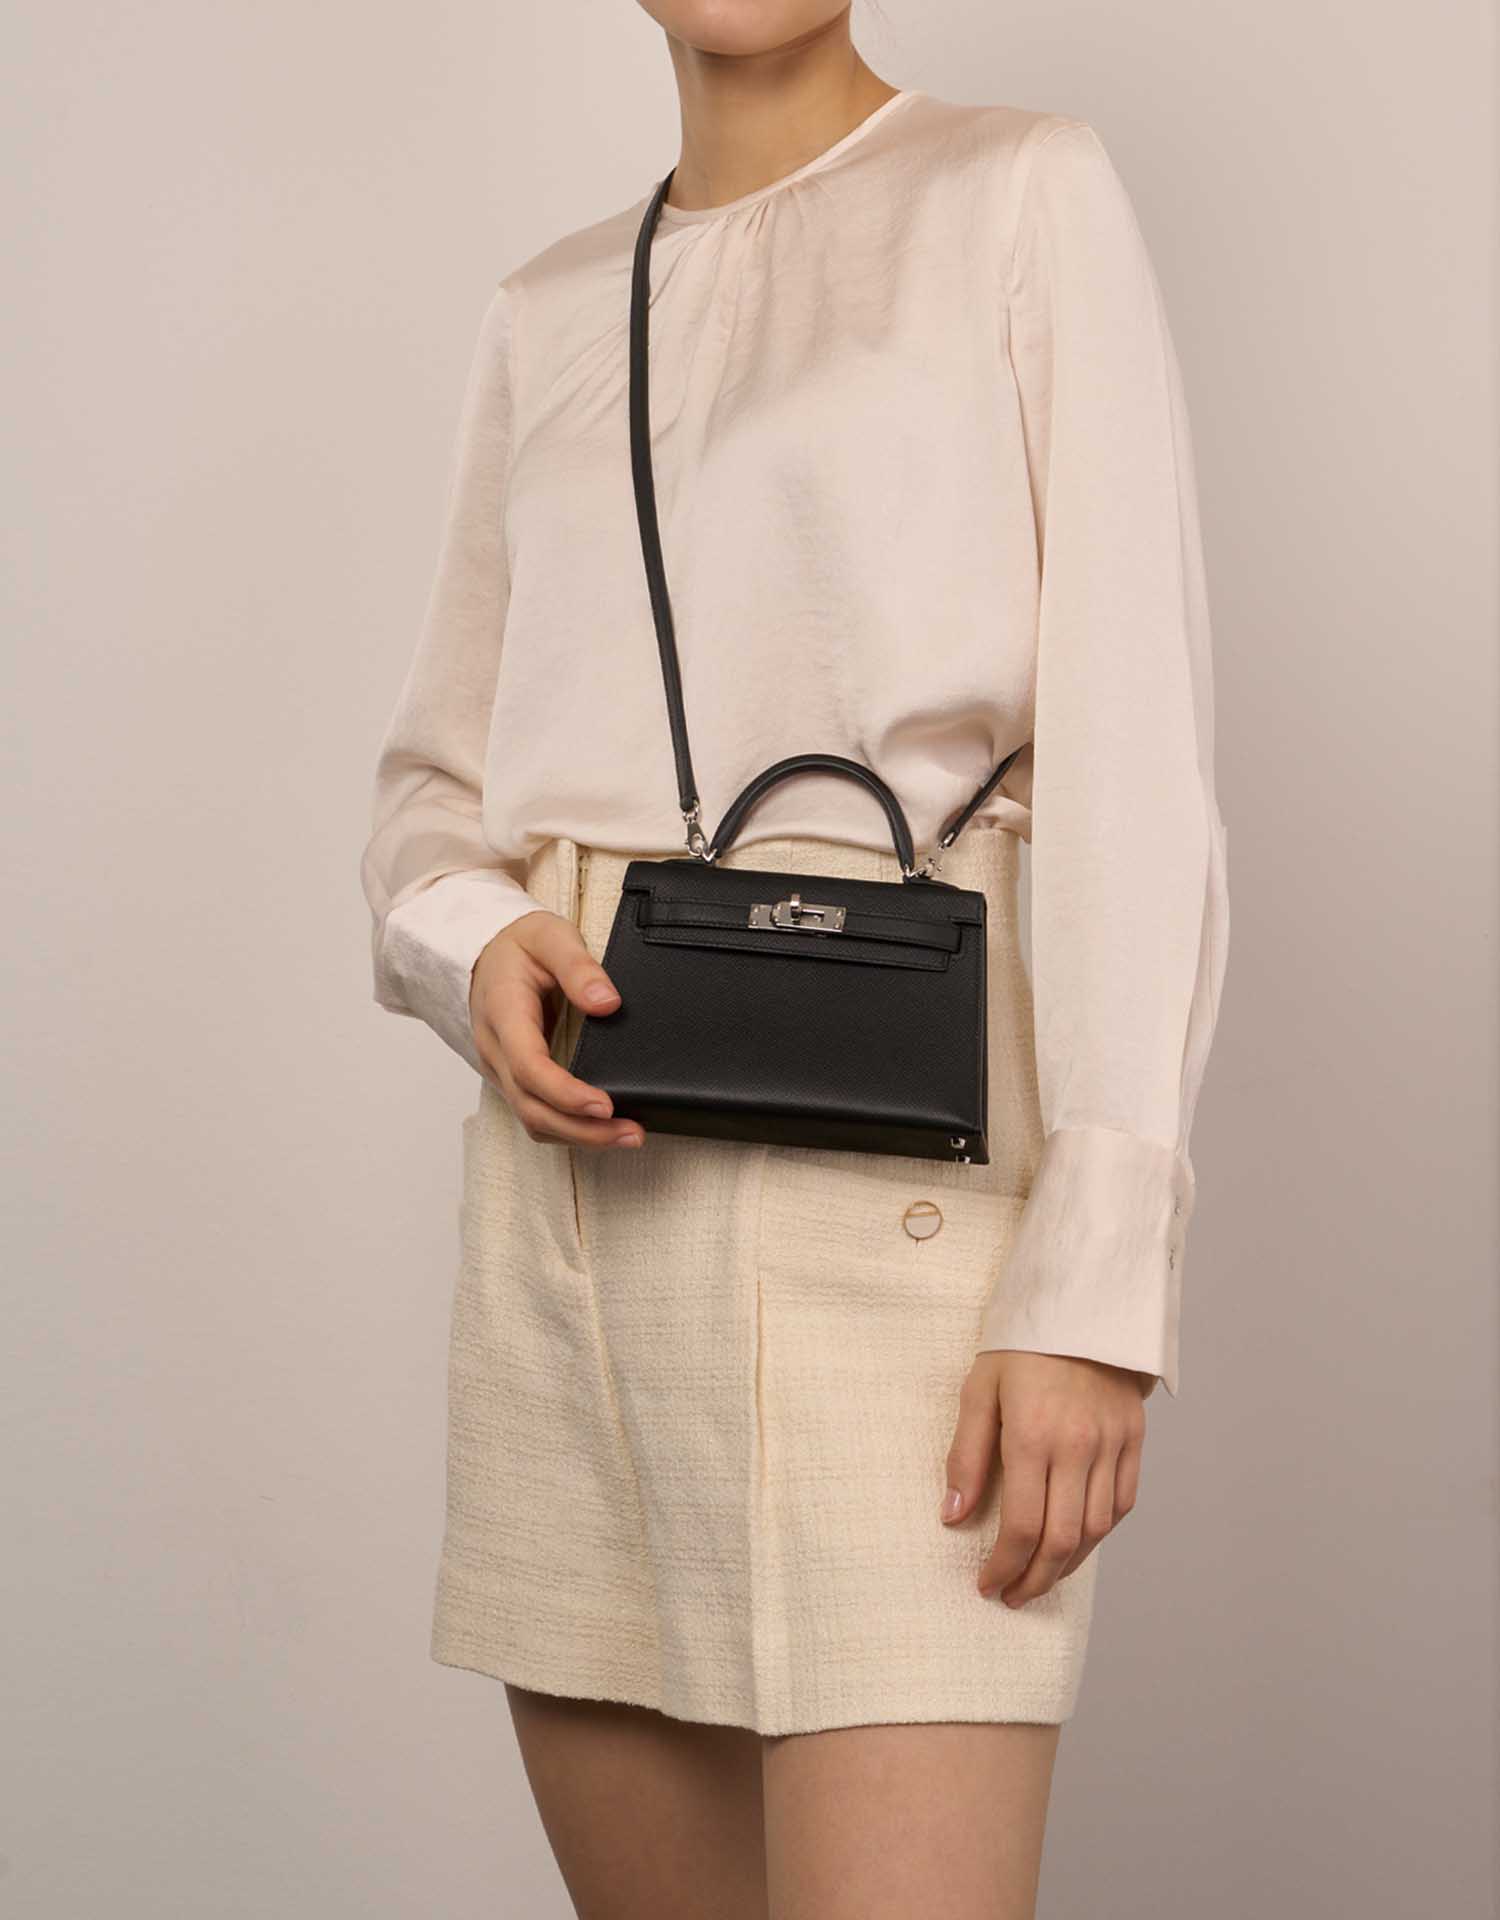 Hermès Kelly Mini Schwarz D8 | Verkaufen Sie Ihre Designer-Tasche auf Saclab.com